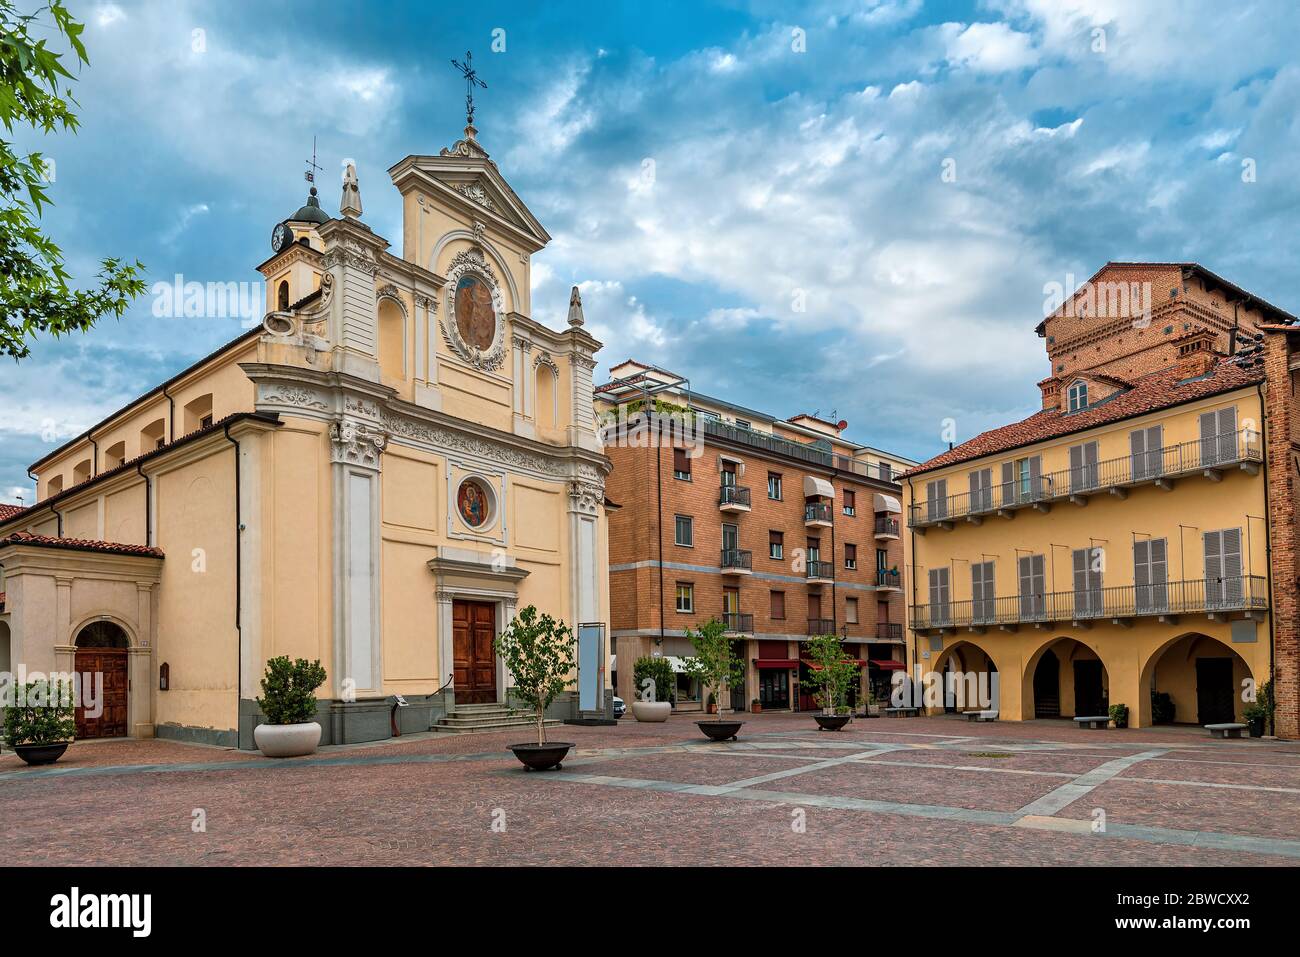 Katholische Kirche und historisches Haus auf dem kleinen Stadtplatz unter bewölktem Himmel in Alba, Piemont, Norditalien. Stockfoto